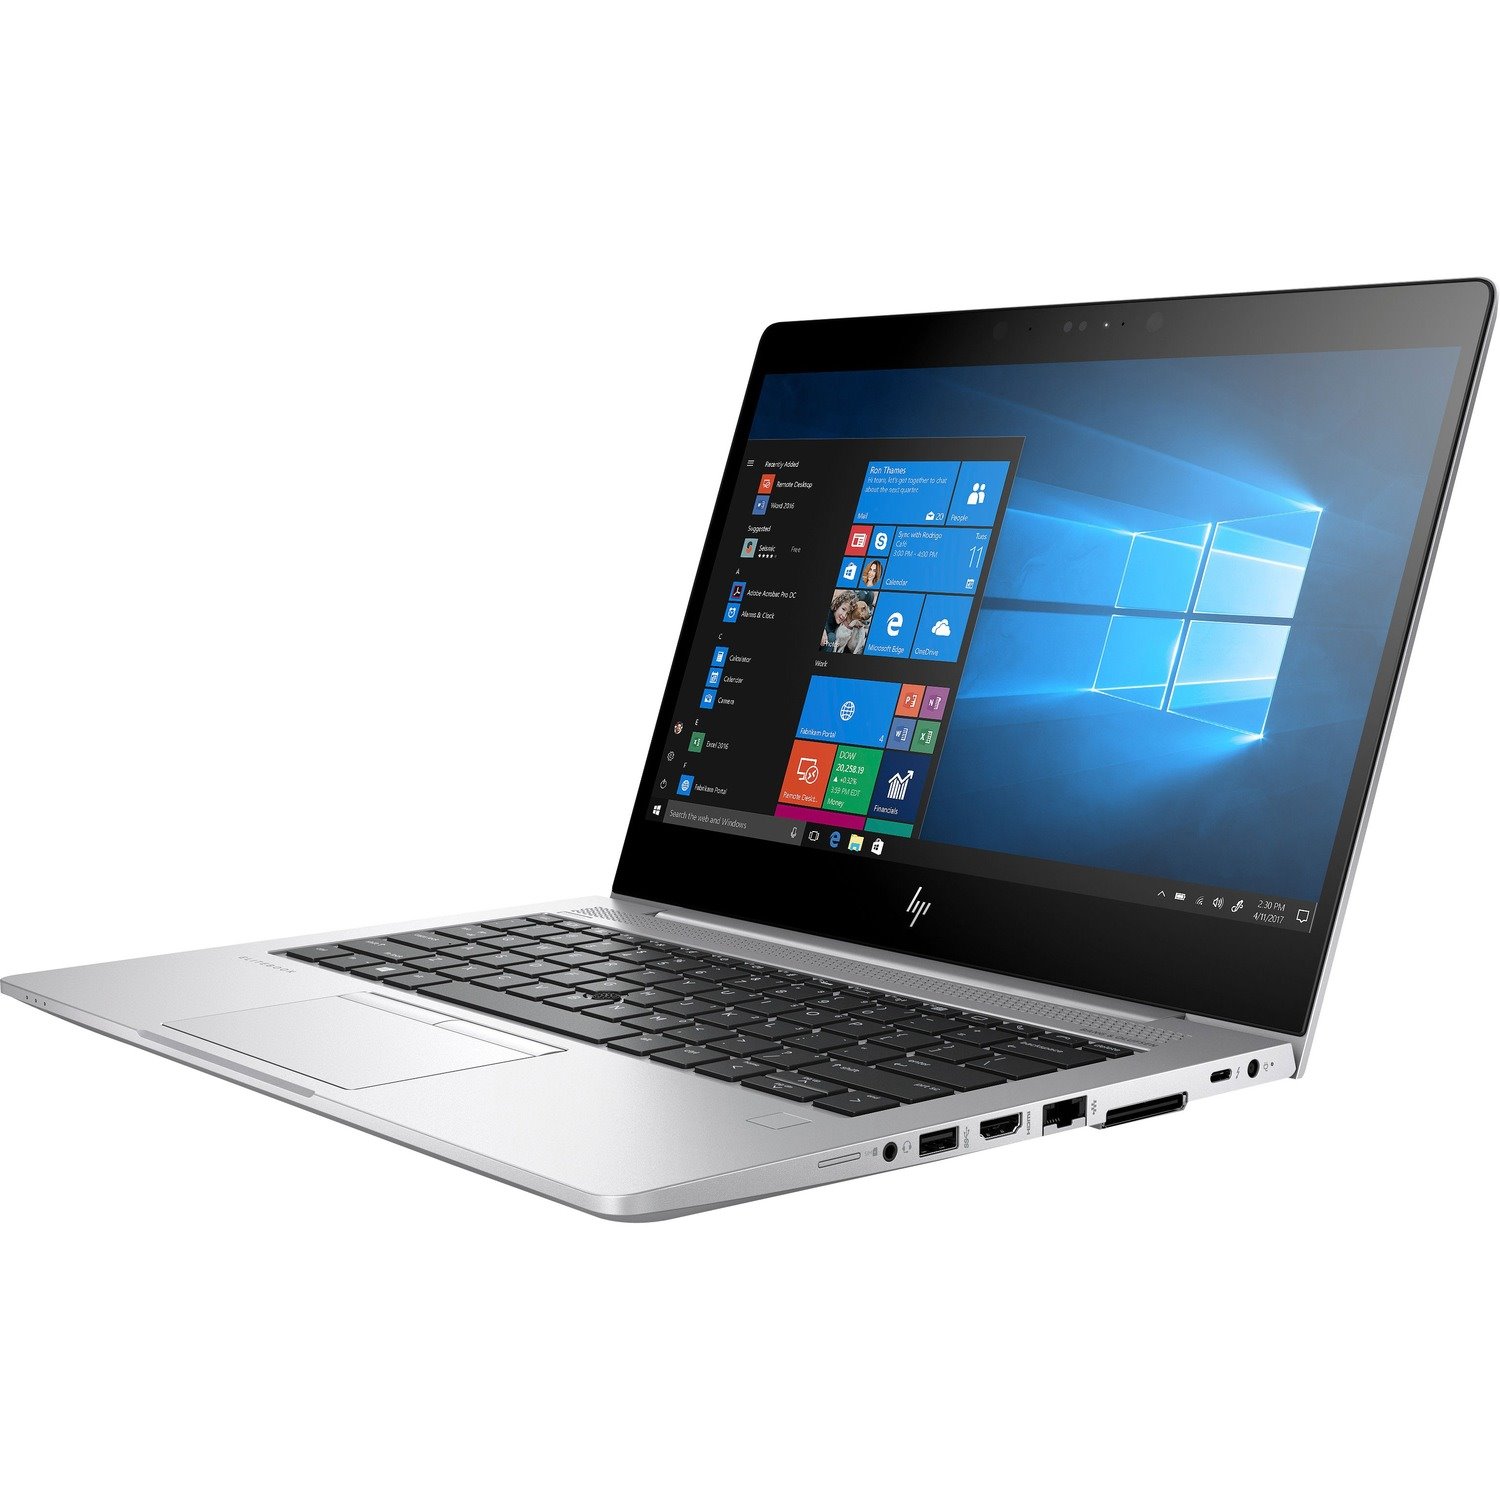 HP EliteBook 830 G5 LTE 33.8 cm (13.3") Notebook - 1920 x 1080 - Intel Core i7 8th Gen i7-8650U Quad-core (4 Core) 1.90 GHz - 8 GB Total RAM - 256 GB SSD